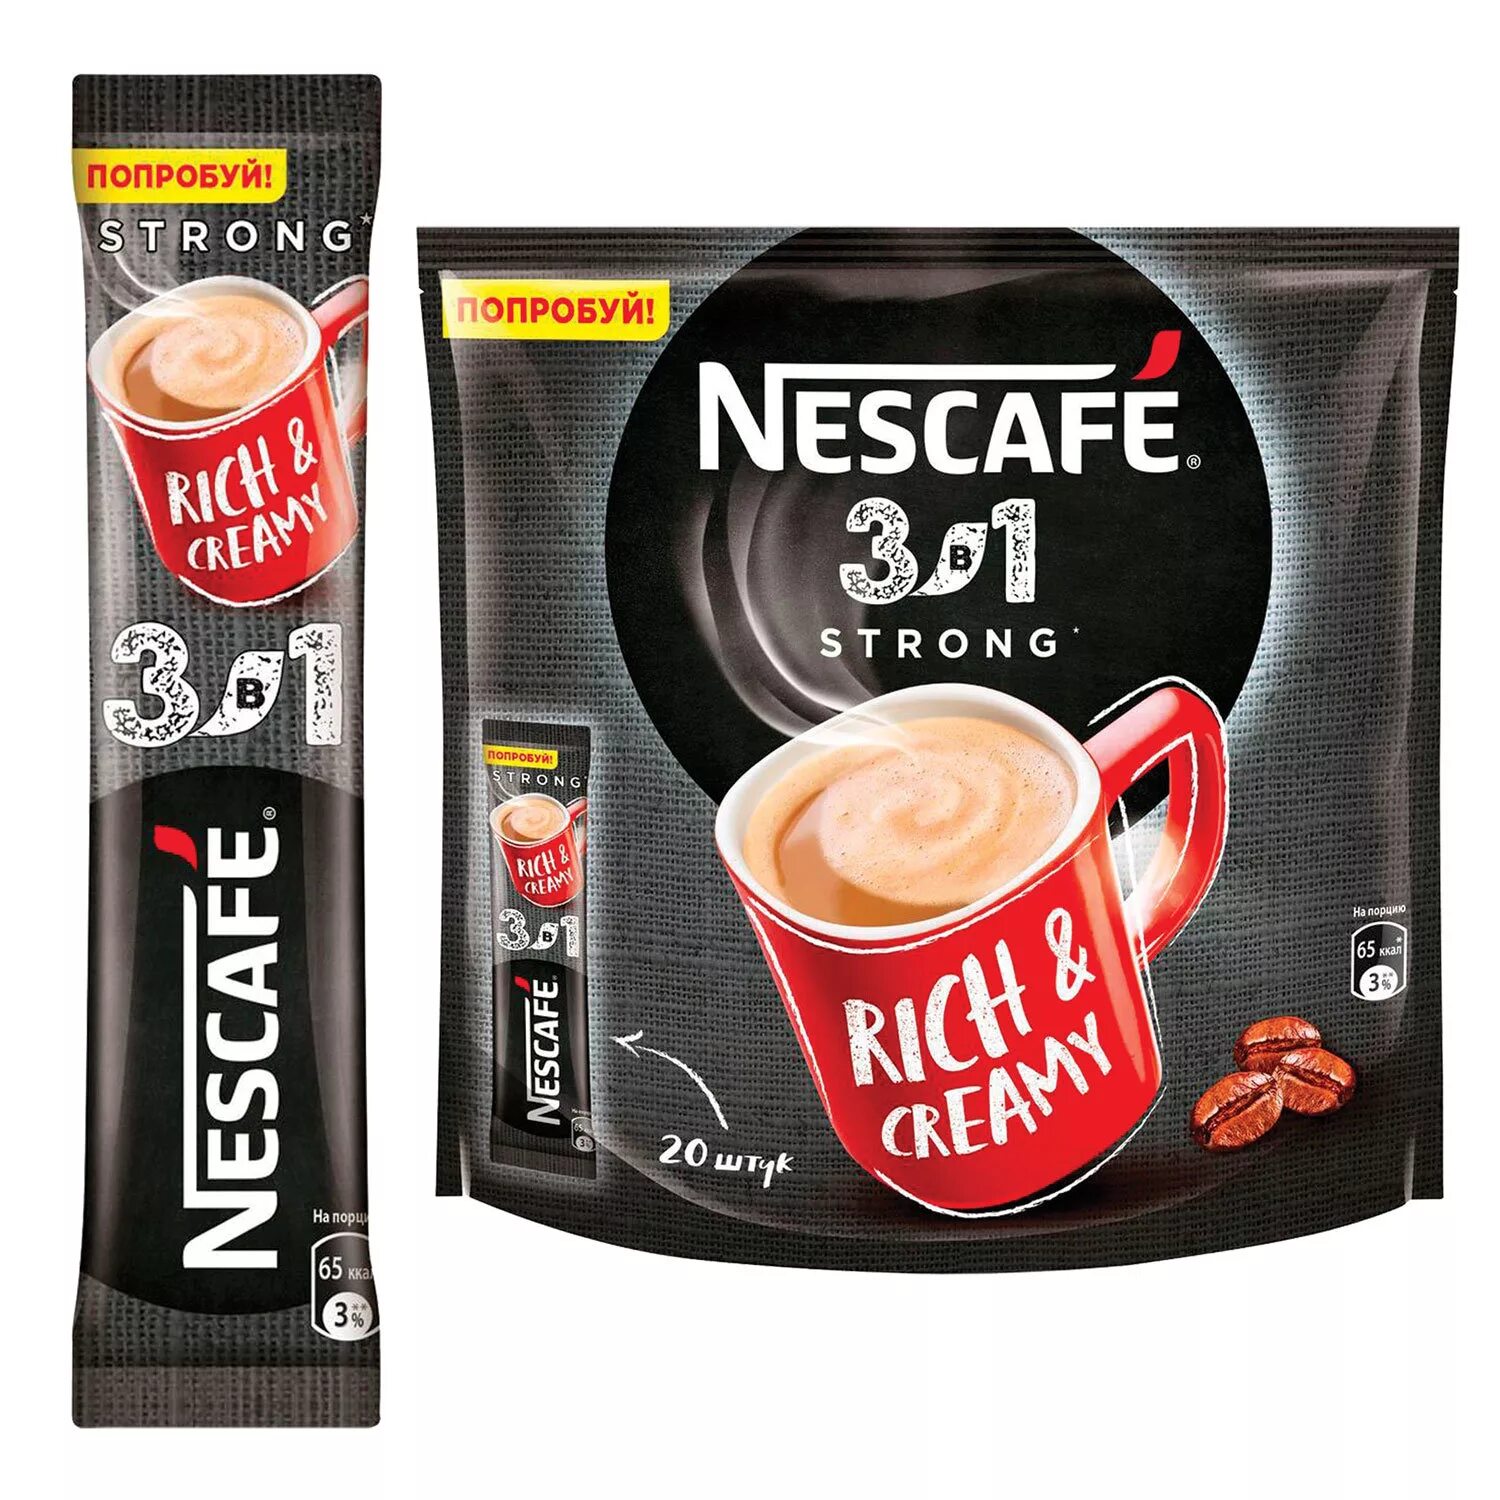 Nescafe 3в1 Rich & creamy. Кофе Нескафе 3 в 1 14,5г крепкий 20*20. Нескафе 3в1 кофе Классик 14,5гр упаковка стики. Кофе в пакетиках 3 в 1 Nescafe. Nescafe 3в1